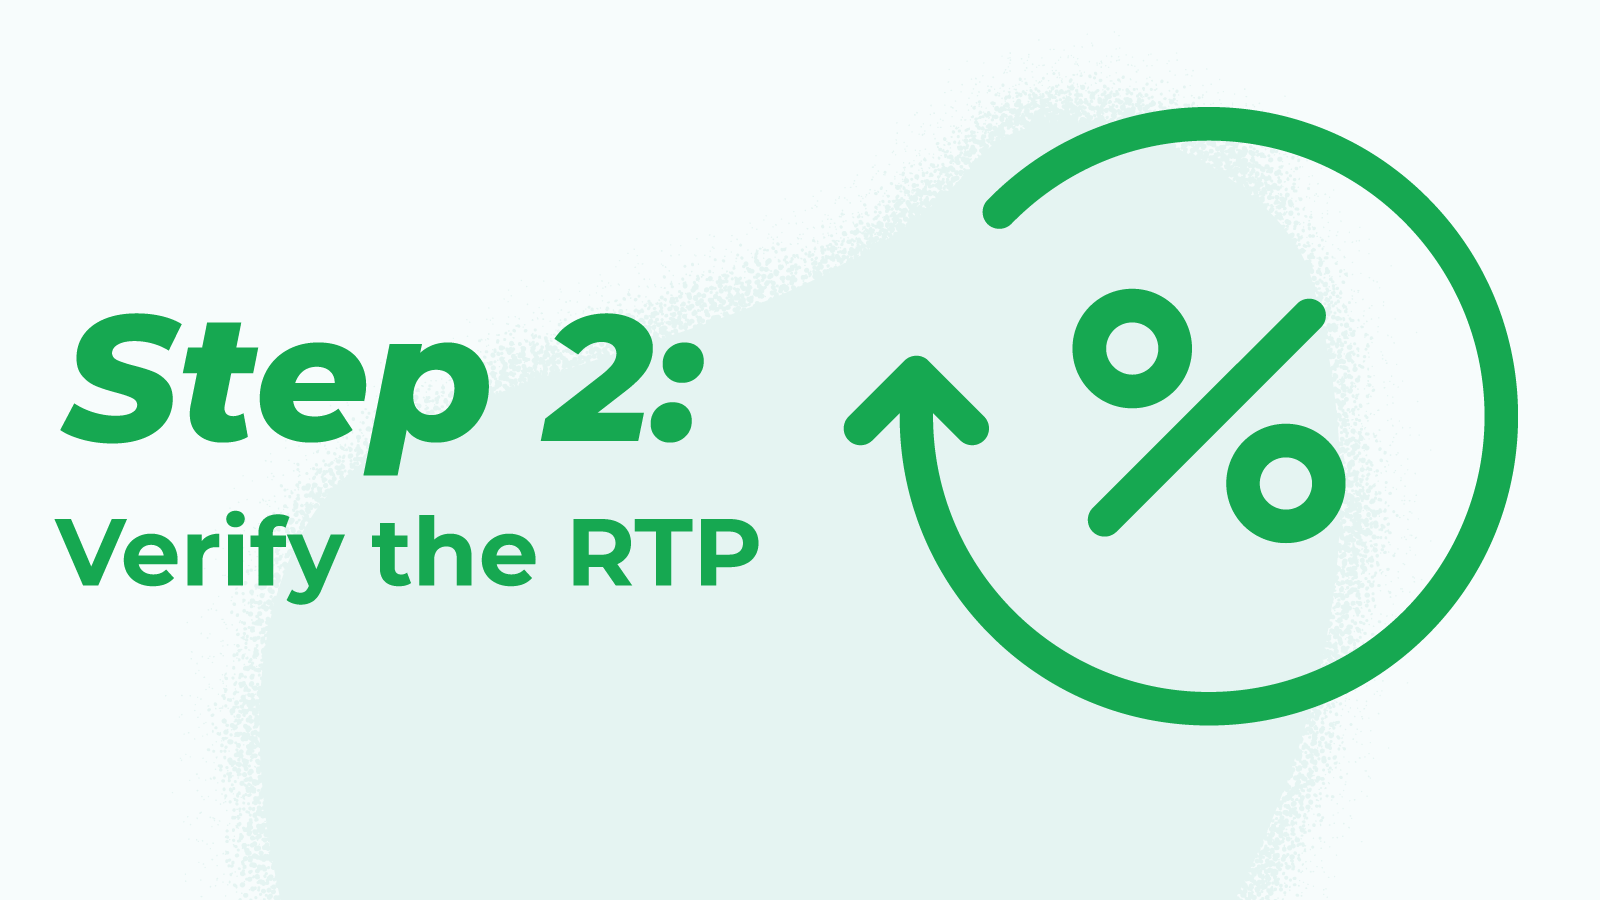 Step 2: Verify the RTP